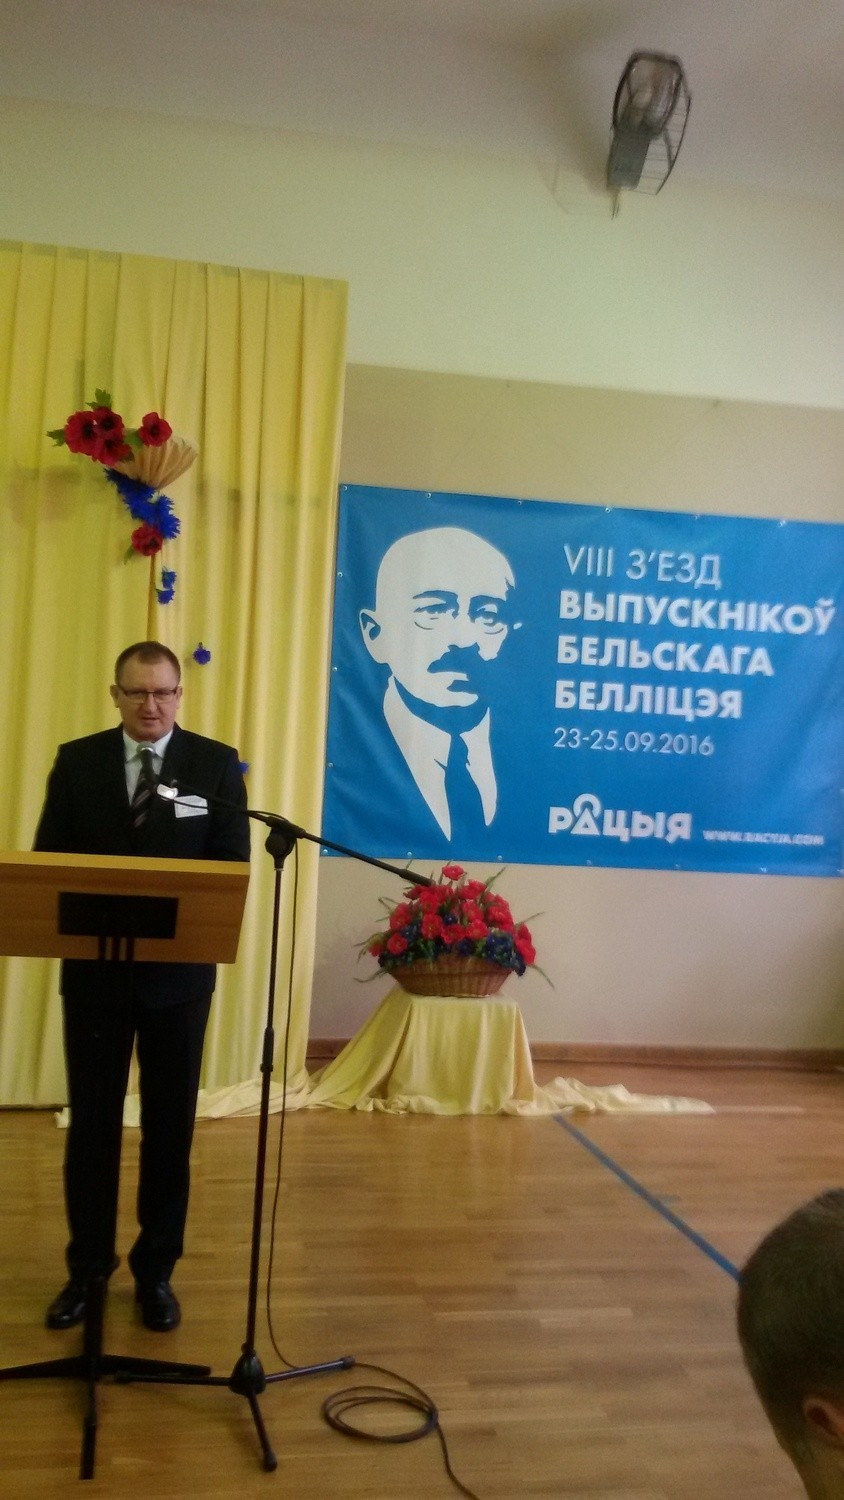 VIII Zjazd Absolwentów Białoruskiego Liceum w Bielsku Podlaskim [ZDJĘCIA]